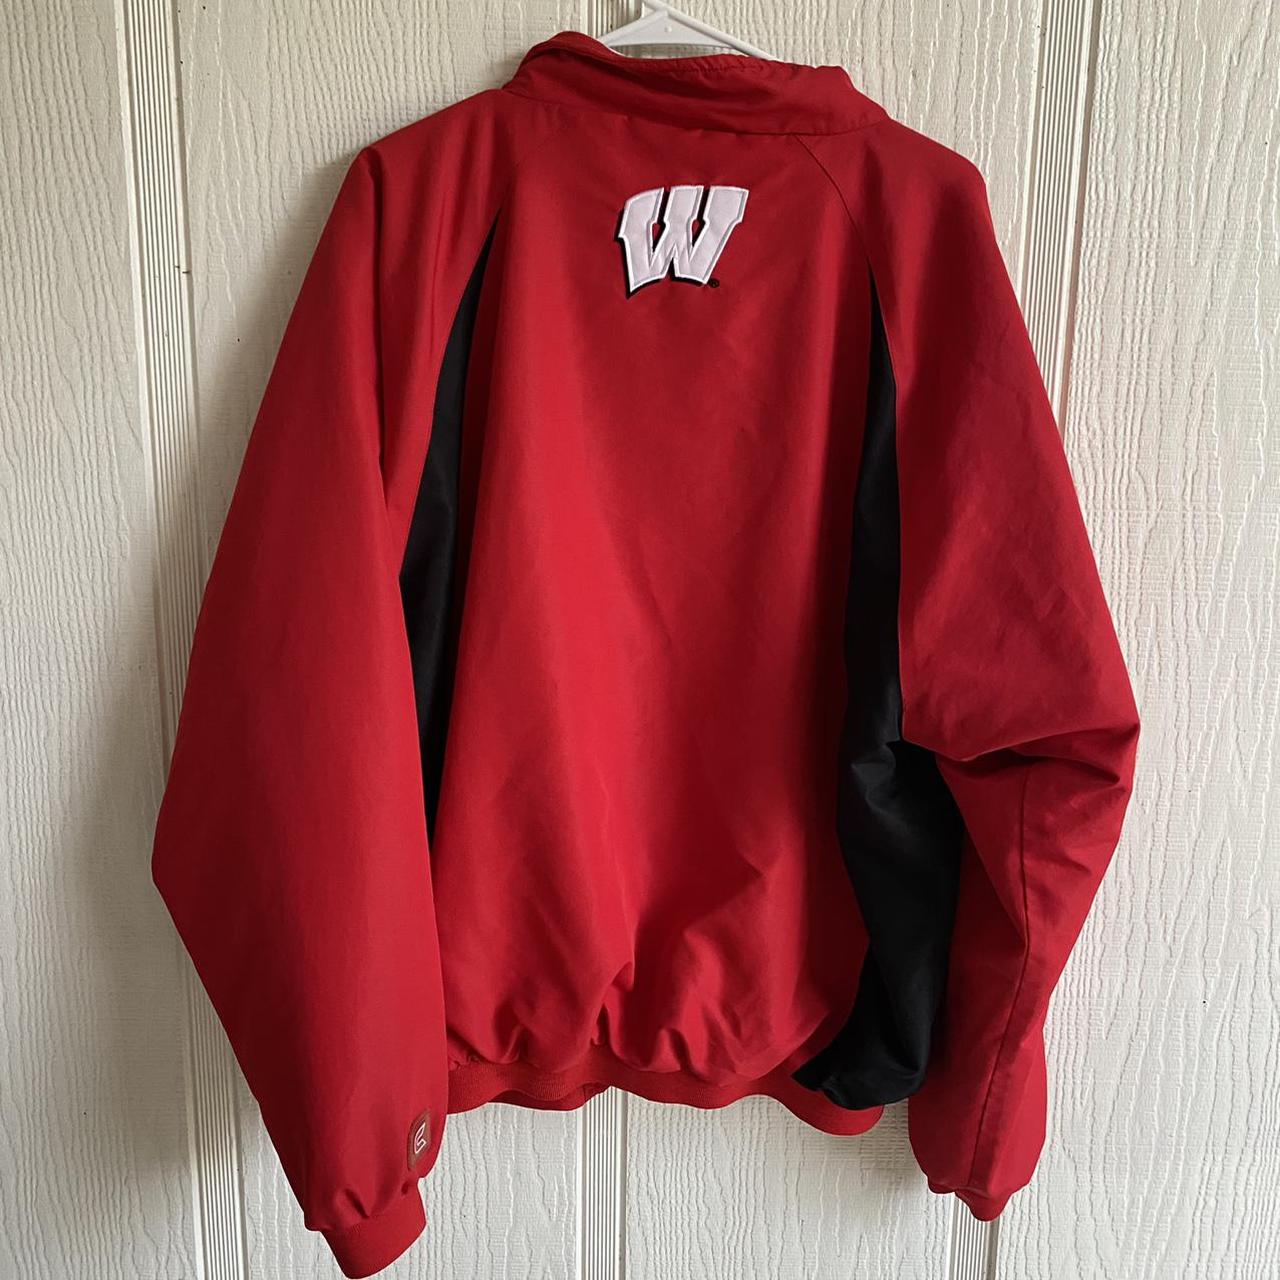 Product Image 4 - Wisconsin university jacket
FREE SHIPPING 
Has